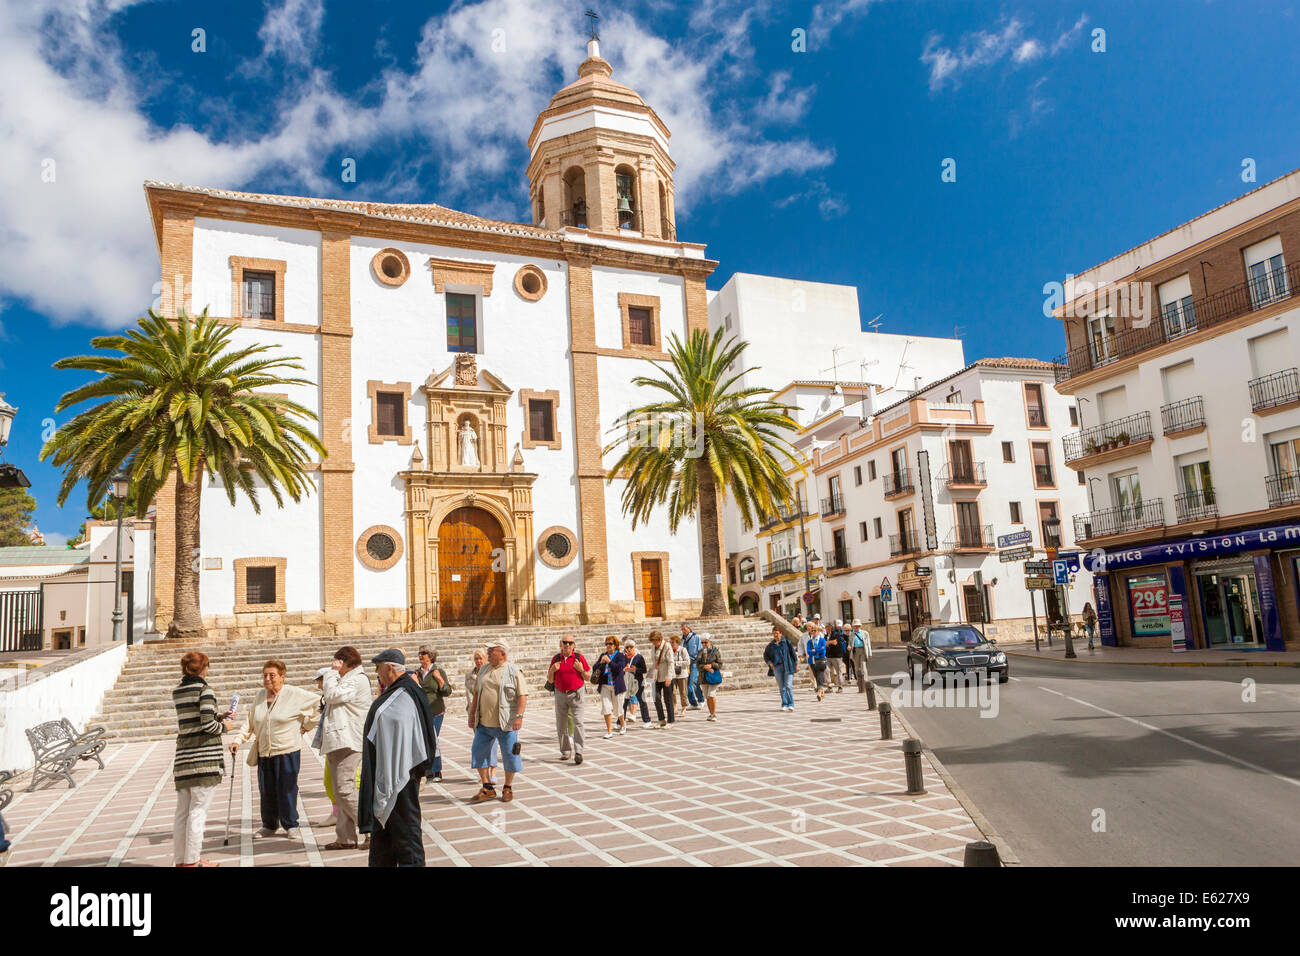 Iglesia de la Merced, Ronda, Malaga province, Andalusia, Spain, Europe. Stock Photo